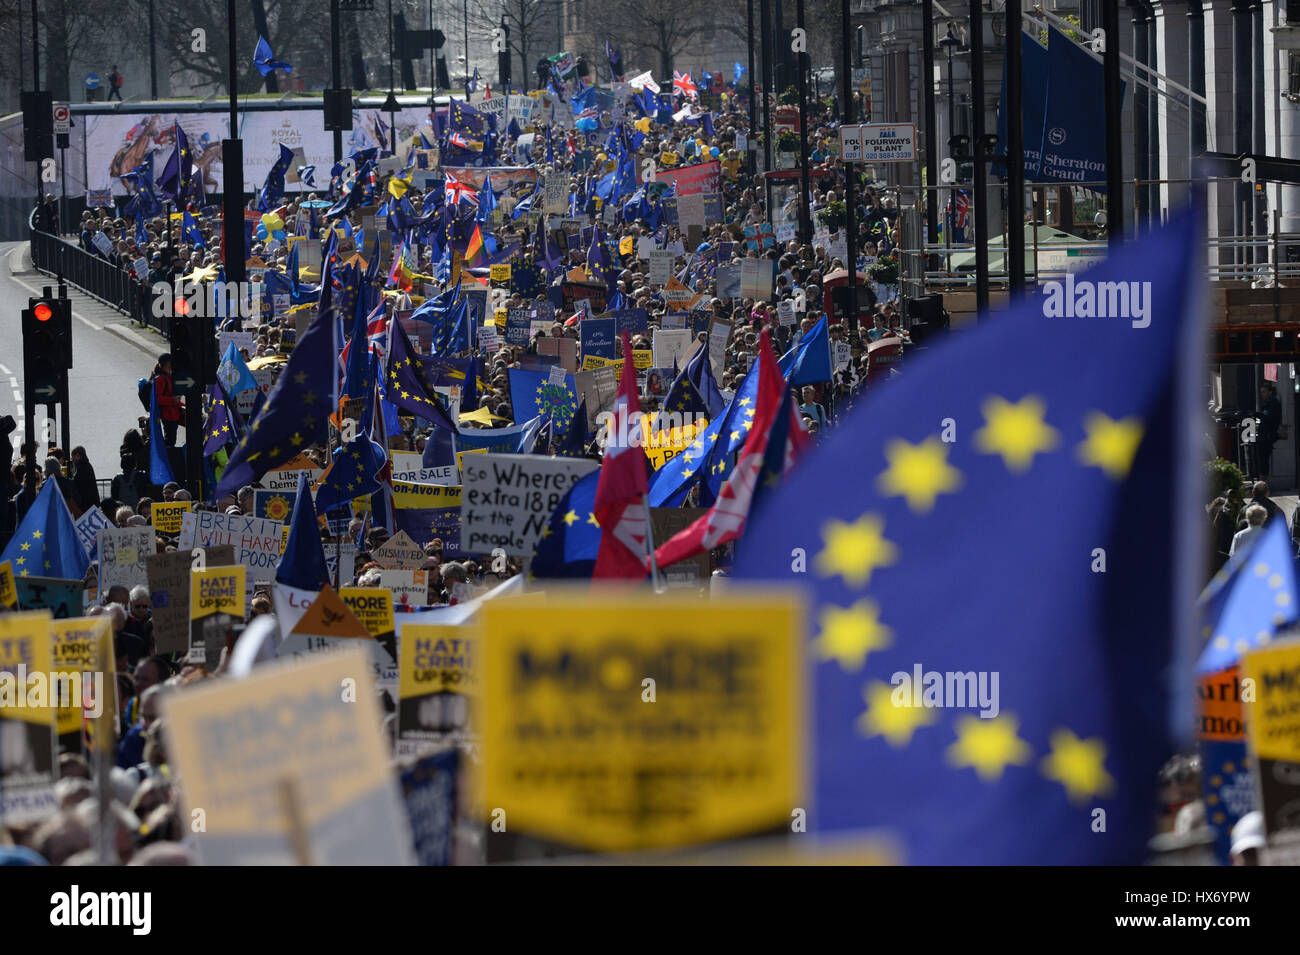 Cartelli e bandiere sono detenute da pro-UE manifestanti che partecipano a marzo per l'Europa rally contro Brexit nel centro di Londra. Foto Stock